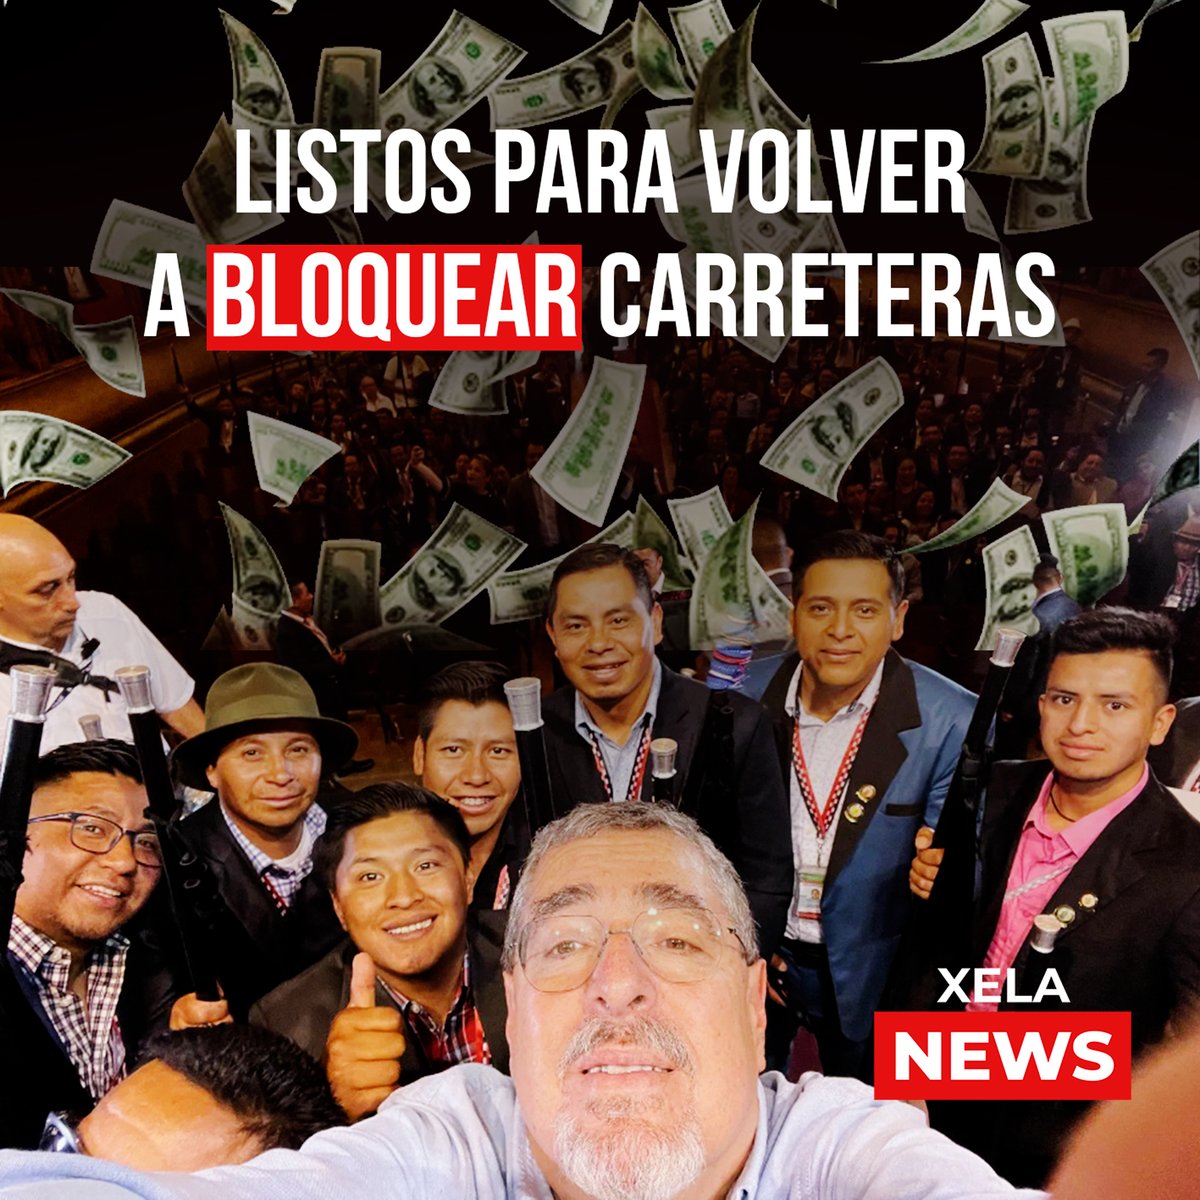 #BernardoArévalo ya les llevó hoy, una fuerte suma de dólares a los @48CantonesToto, cortesía de la @usembassyguate y ya se preparan para volver a bloquear el país.
Ya saben amigos seguidores, otra vez será por 'la democracia'.
#ArévaloNoMeRepresenta
#XelaNews 🇫🇷